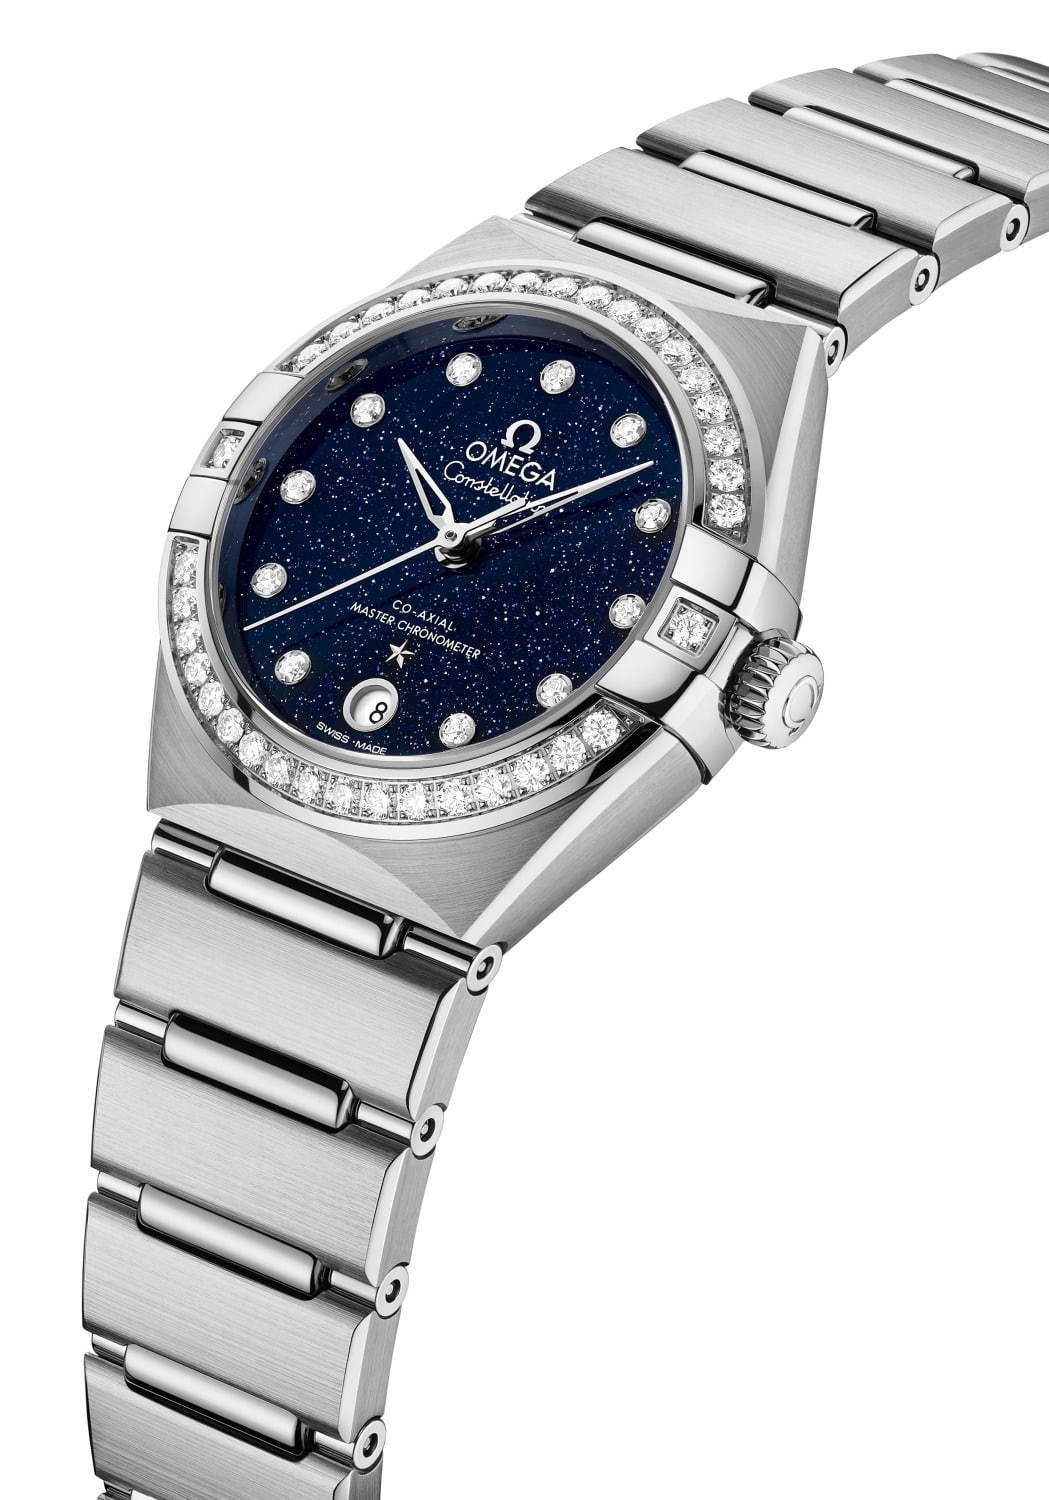 Omega Constellation レディース腕時計フェースは白蝶貝です